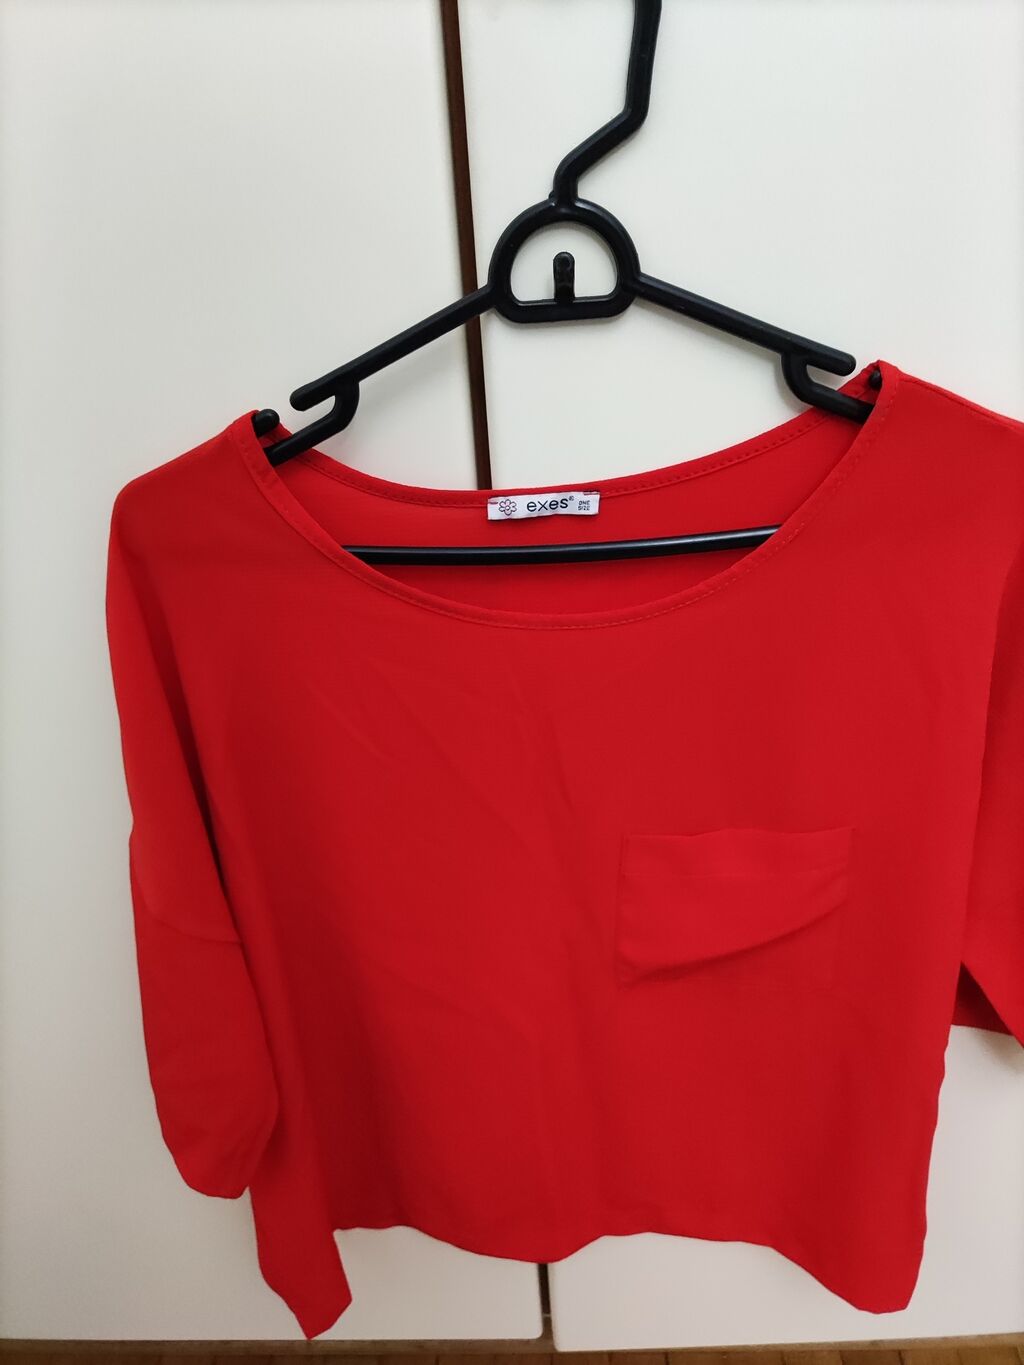 Κόκκινο πουκαμισο exe one size (υπάρχουν και αλλα ρουχα στο προφίλ μου ) η αγγελία δημοσιεύτηκε 23 Νοέμβριος 2021 21:04:36: Κόκκινο πουκαμισο exe one size (υπάρχουν και αλλα ρουχα στο προφίλ